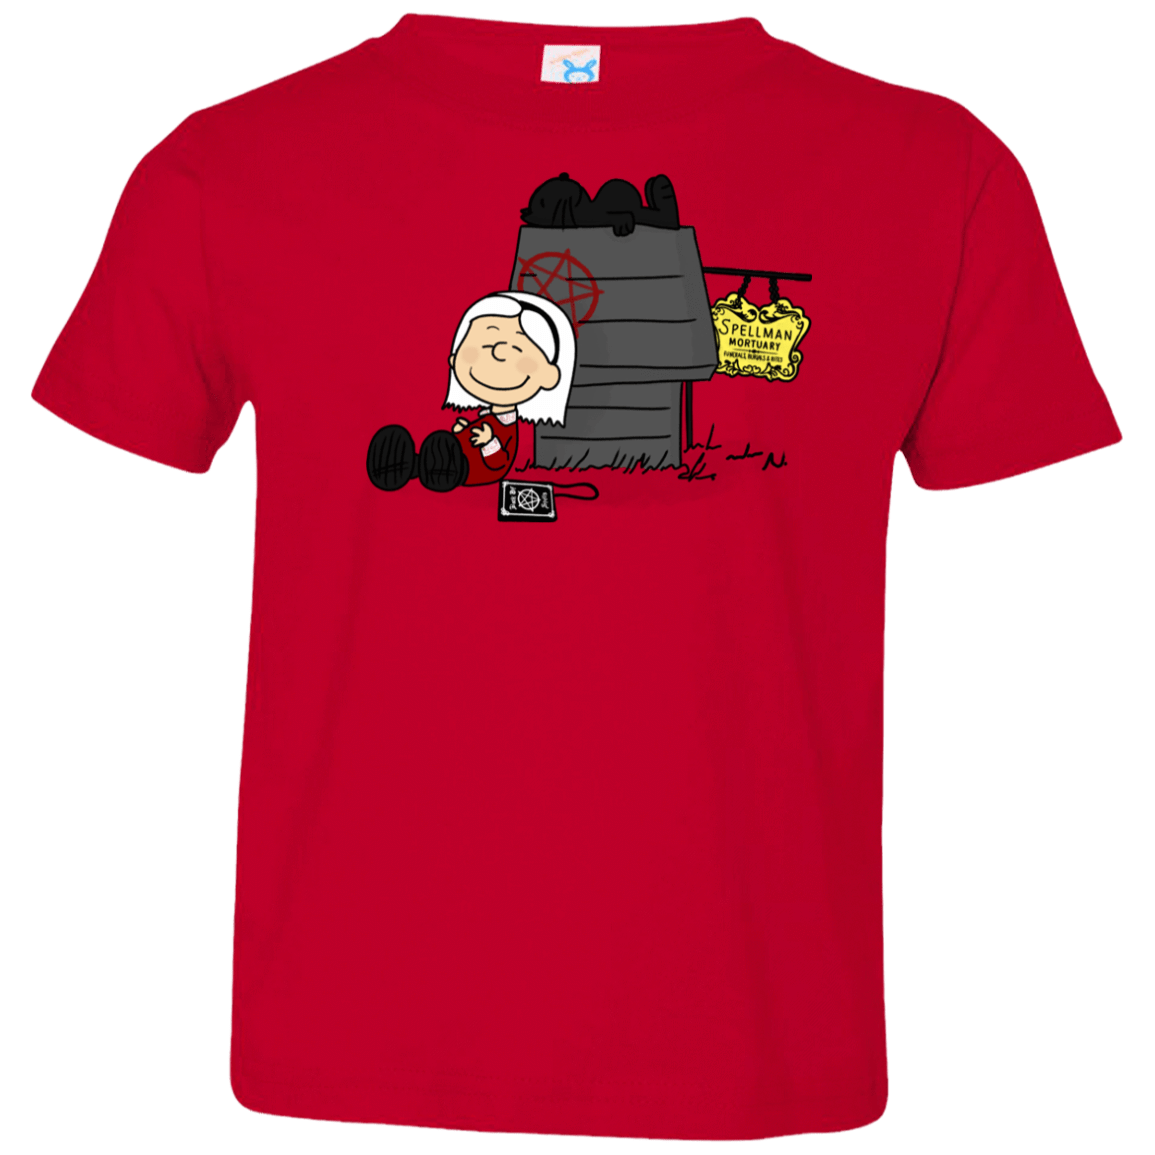 T-Shirts Red / 2T Sabrina Brown Toddler Premium T-Shirt